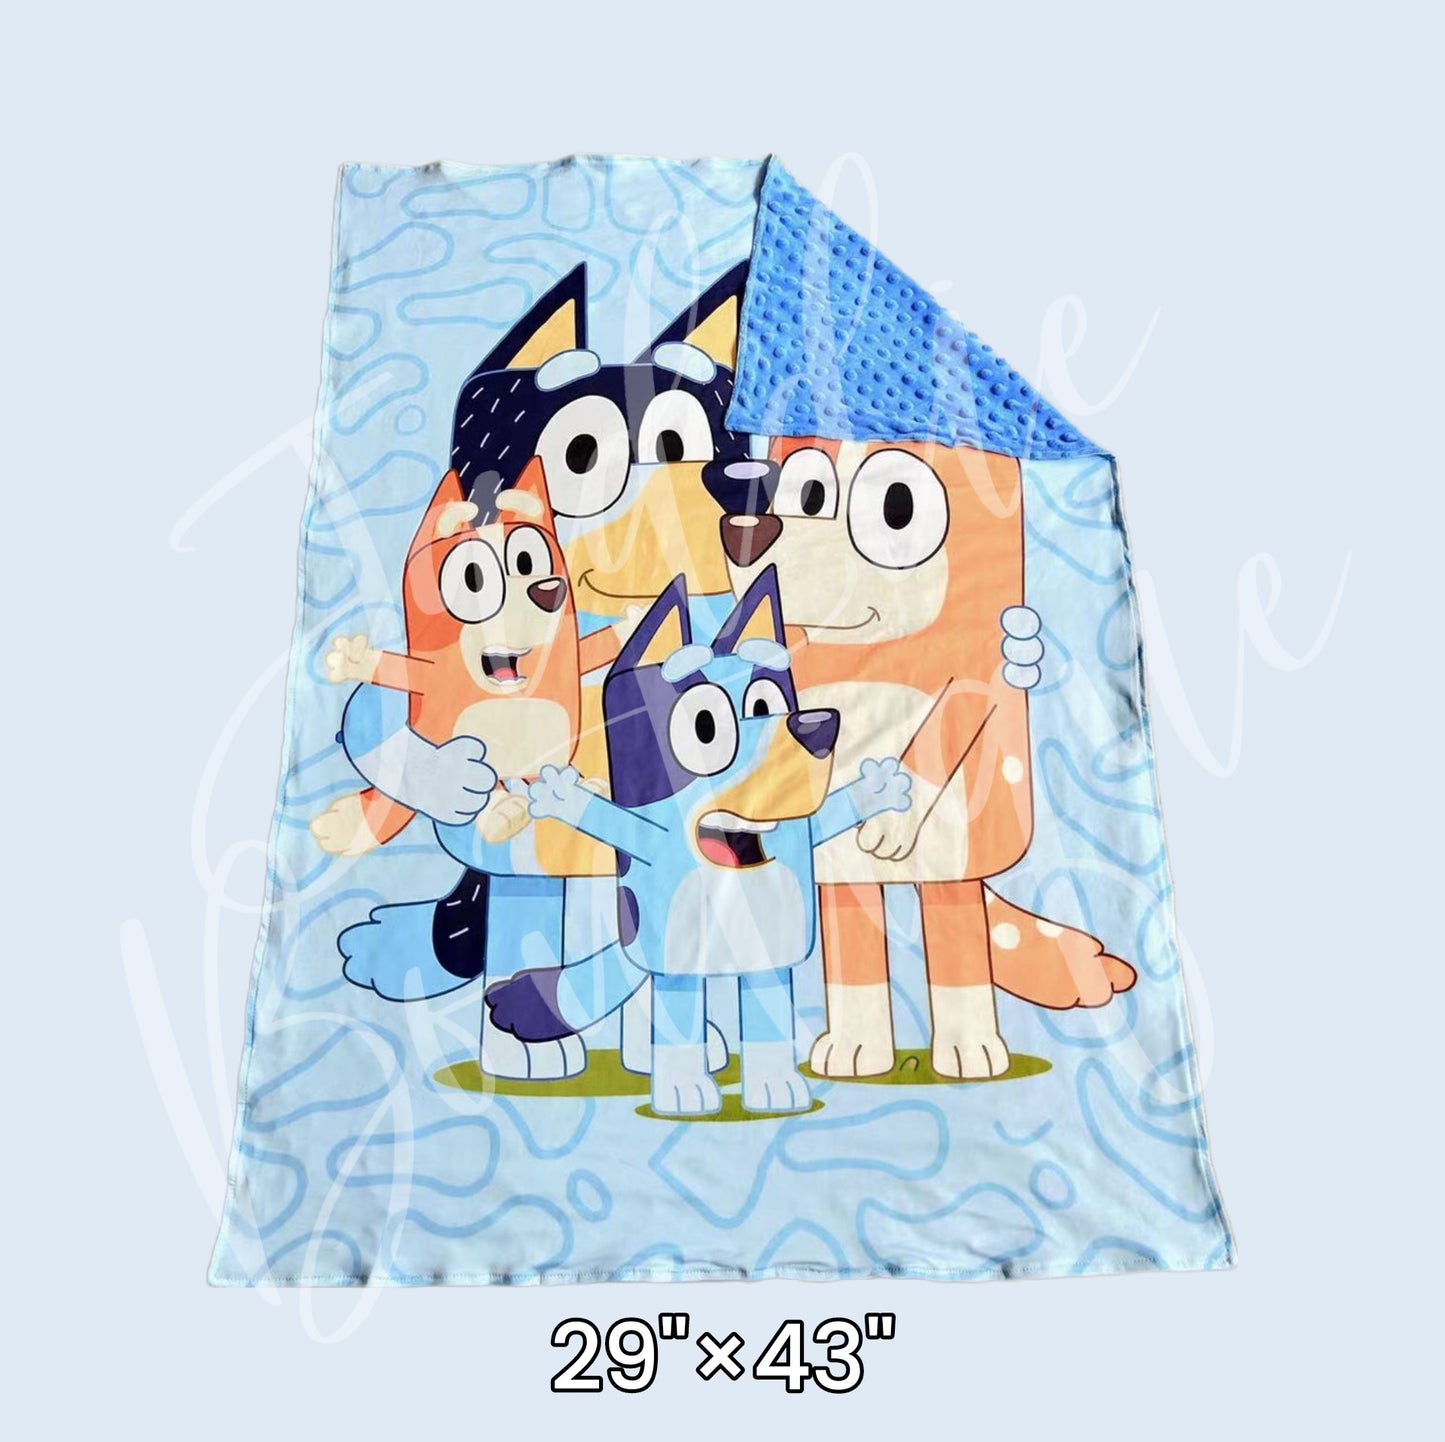 Blue Dog Blanket